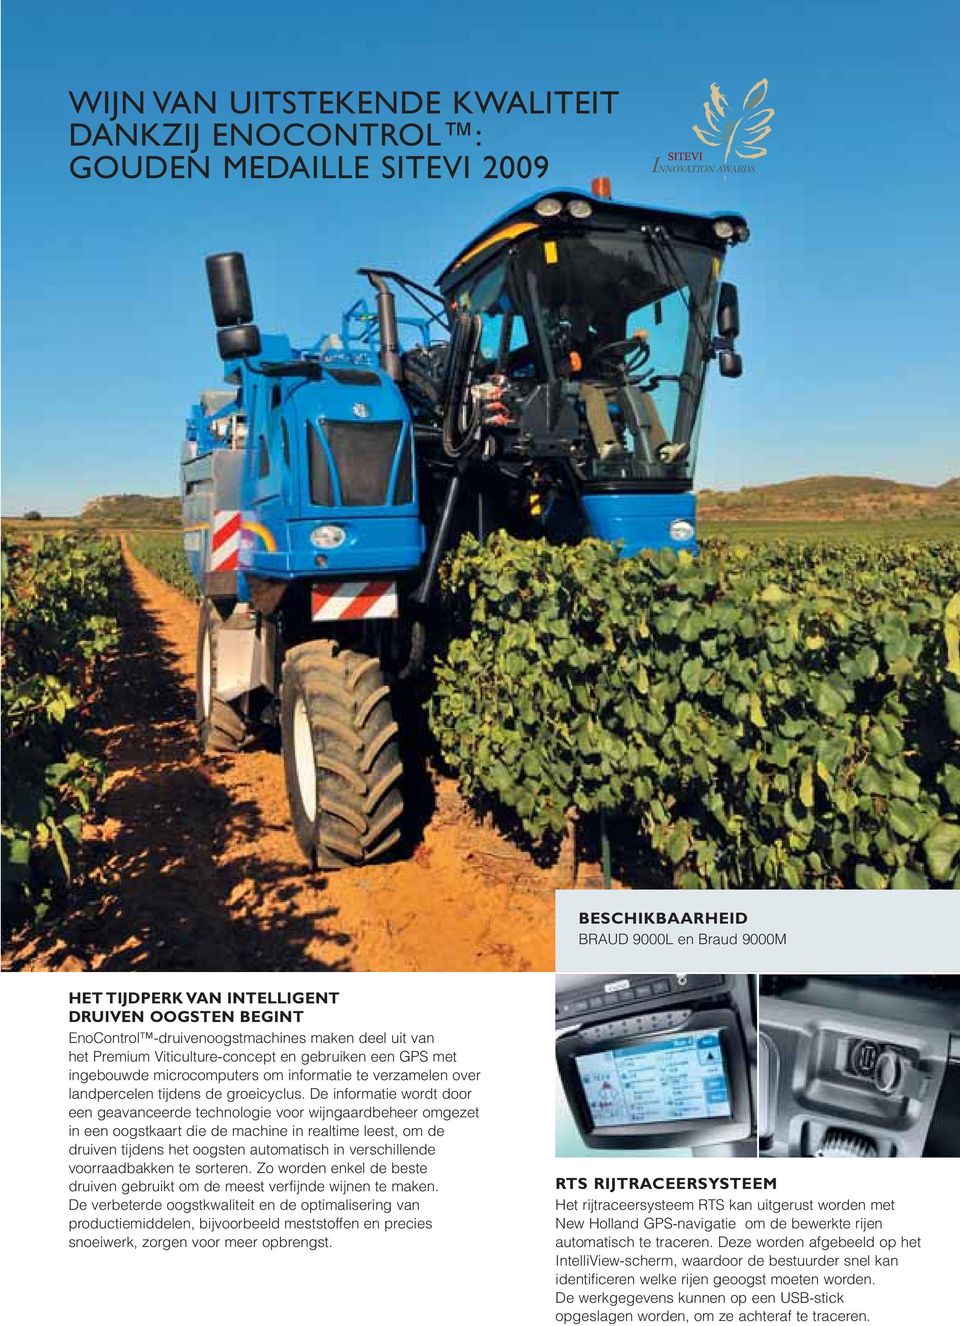 De informatie wordt door een geavanceerde technologie voor wijngaardbeheer omgezet in een oogstkaart die de machine in realtime leest, om de druiven tijdens het oogsten automatisch in verschillende